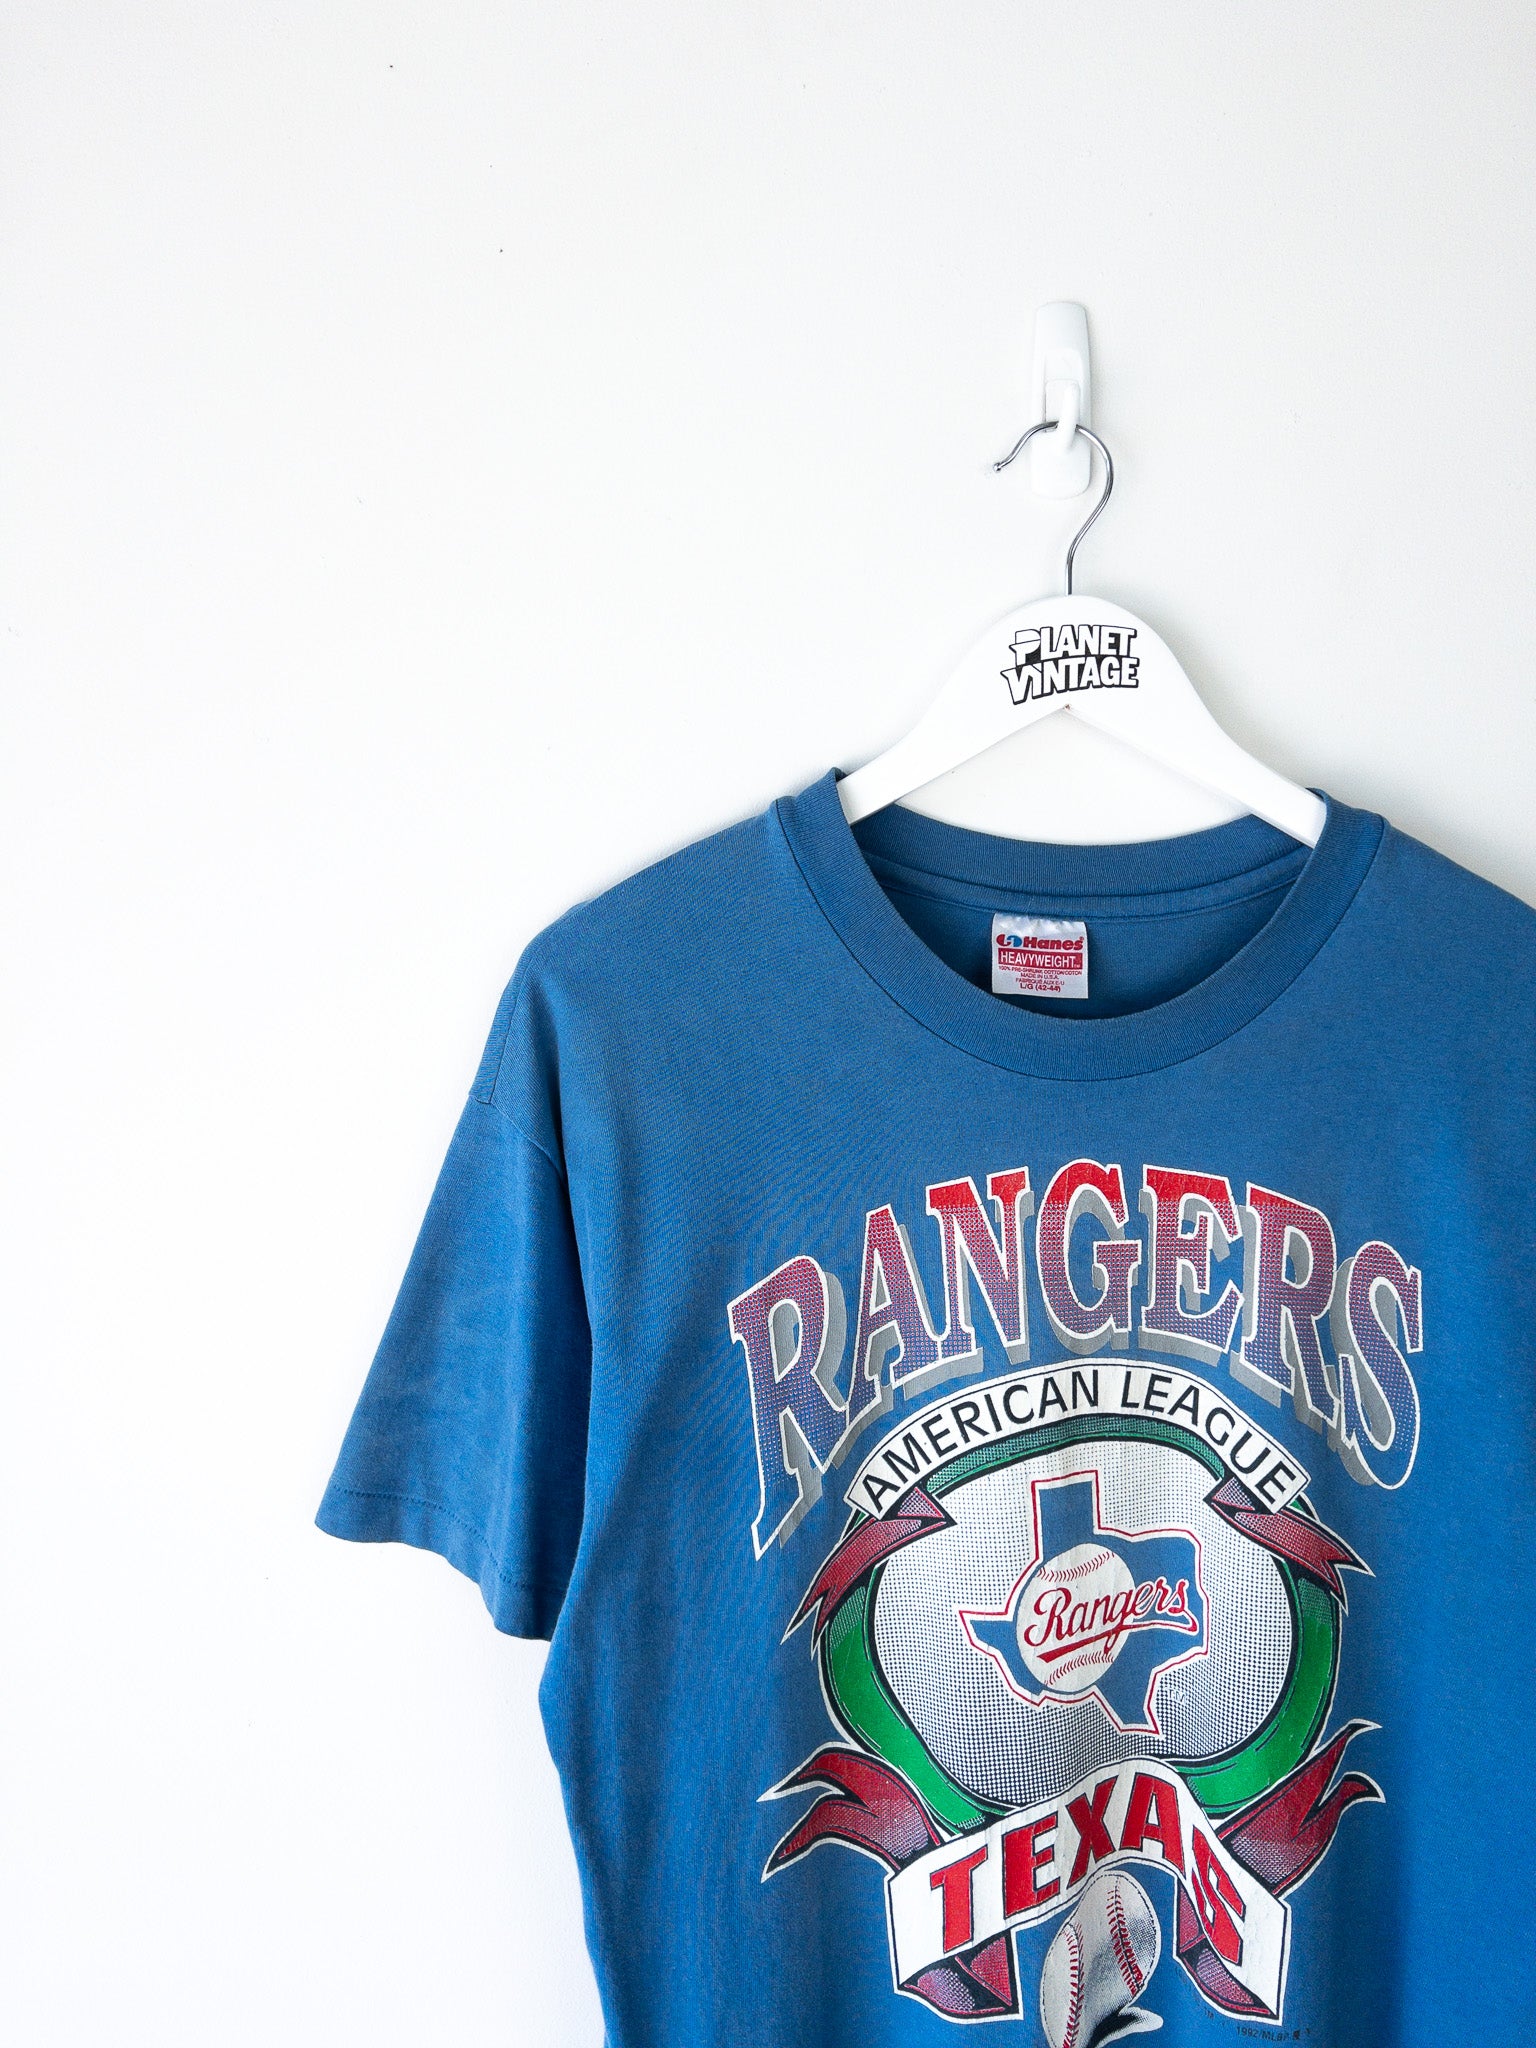 Vintage Texas Rangers 1992 Tee (L)